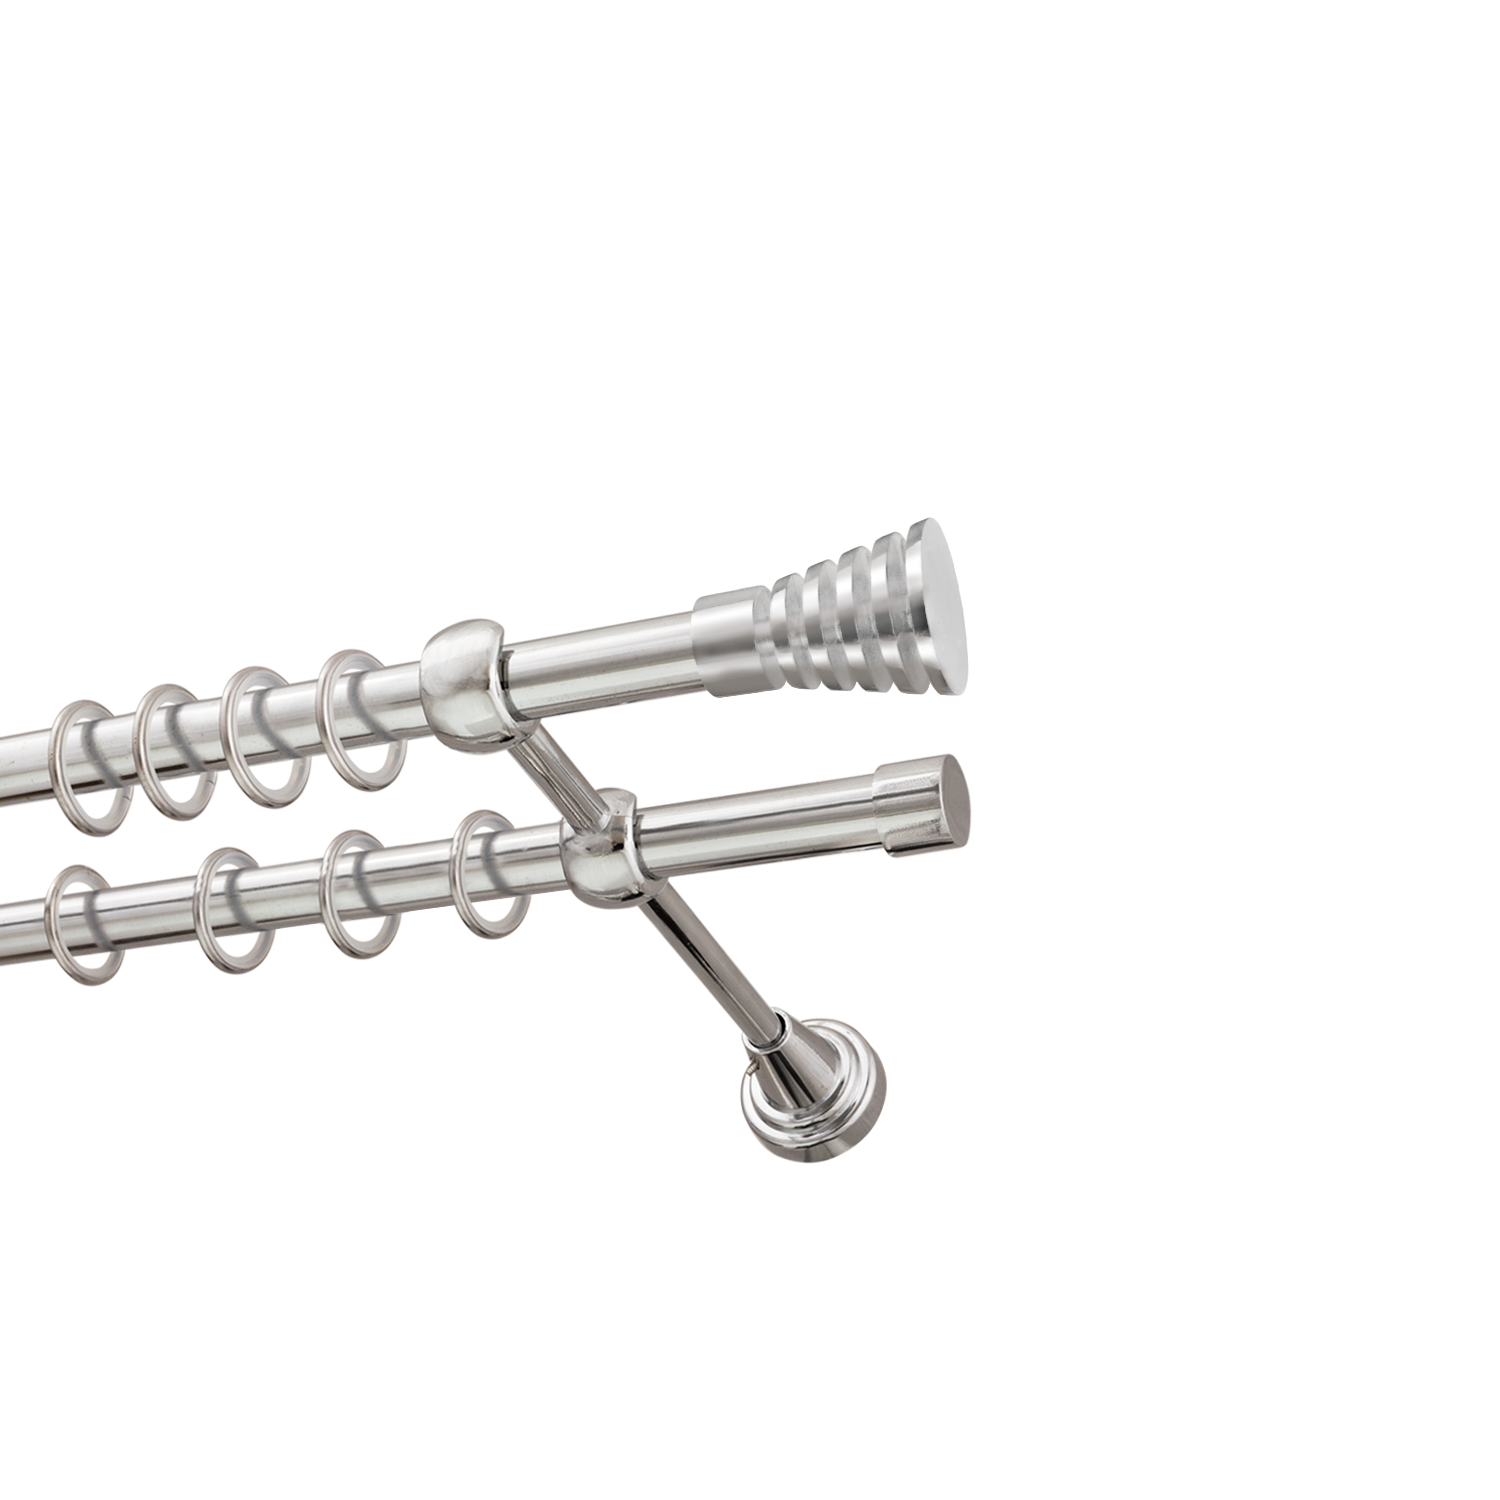 Металлический карниз для штор Верона, двухрядный 16/16 мм, серебро, гладкая штанга, длина 240 см